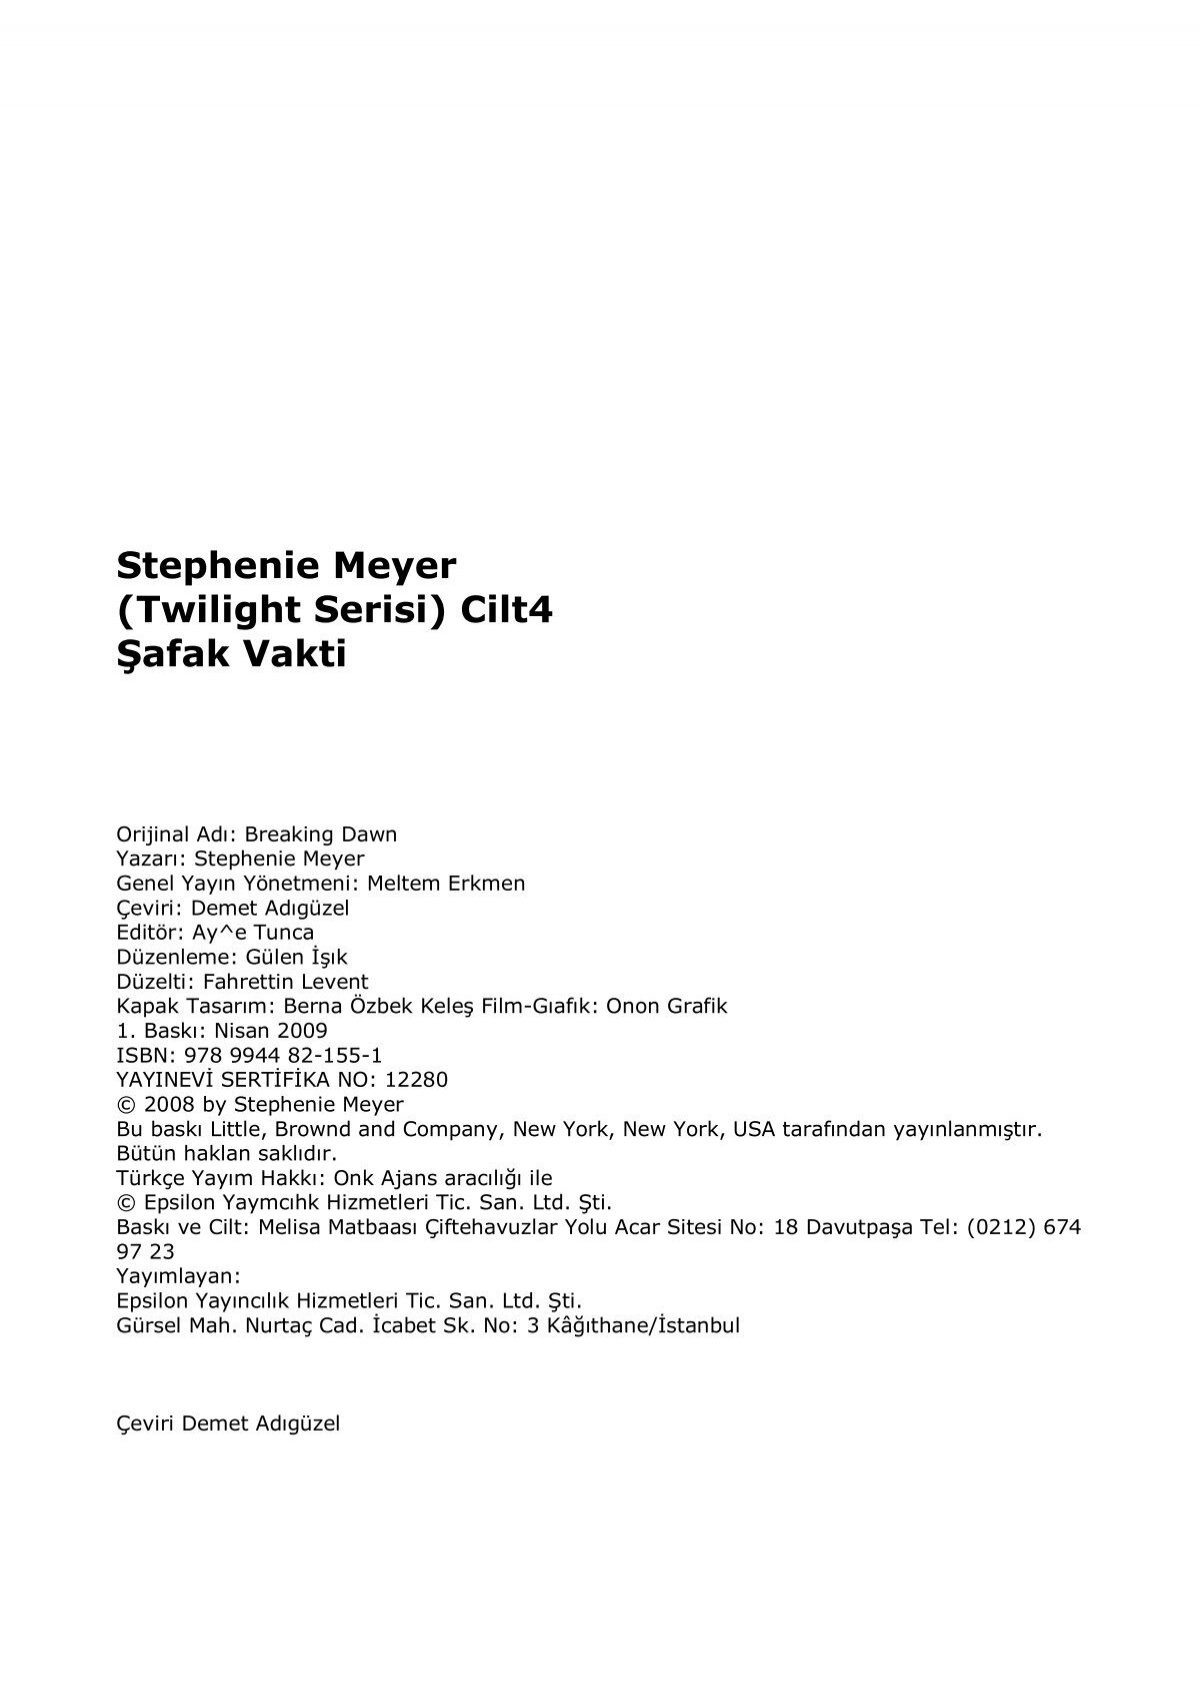 Stephenie Meyer Twilight Serisi Cilt4 Safak Vakti Utku618 - katil kim bakislarimla katili korkuttum roblox turkce